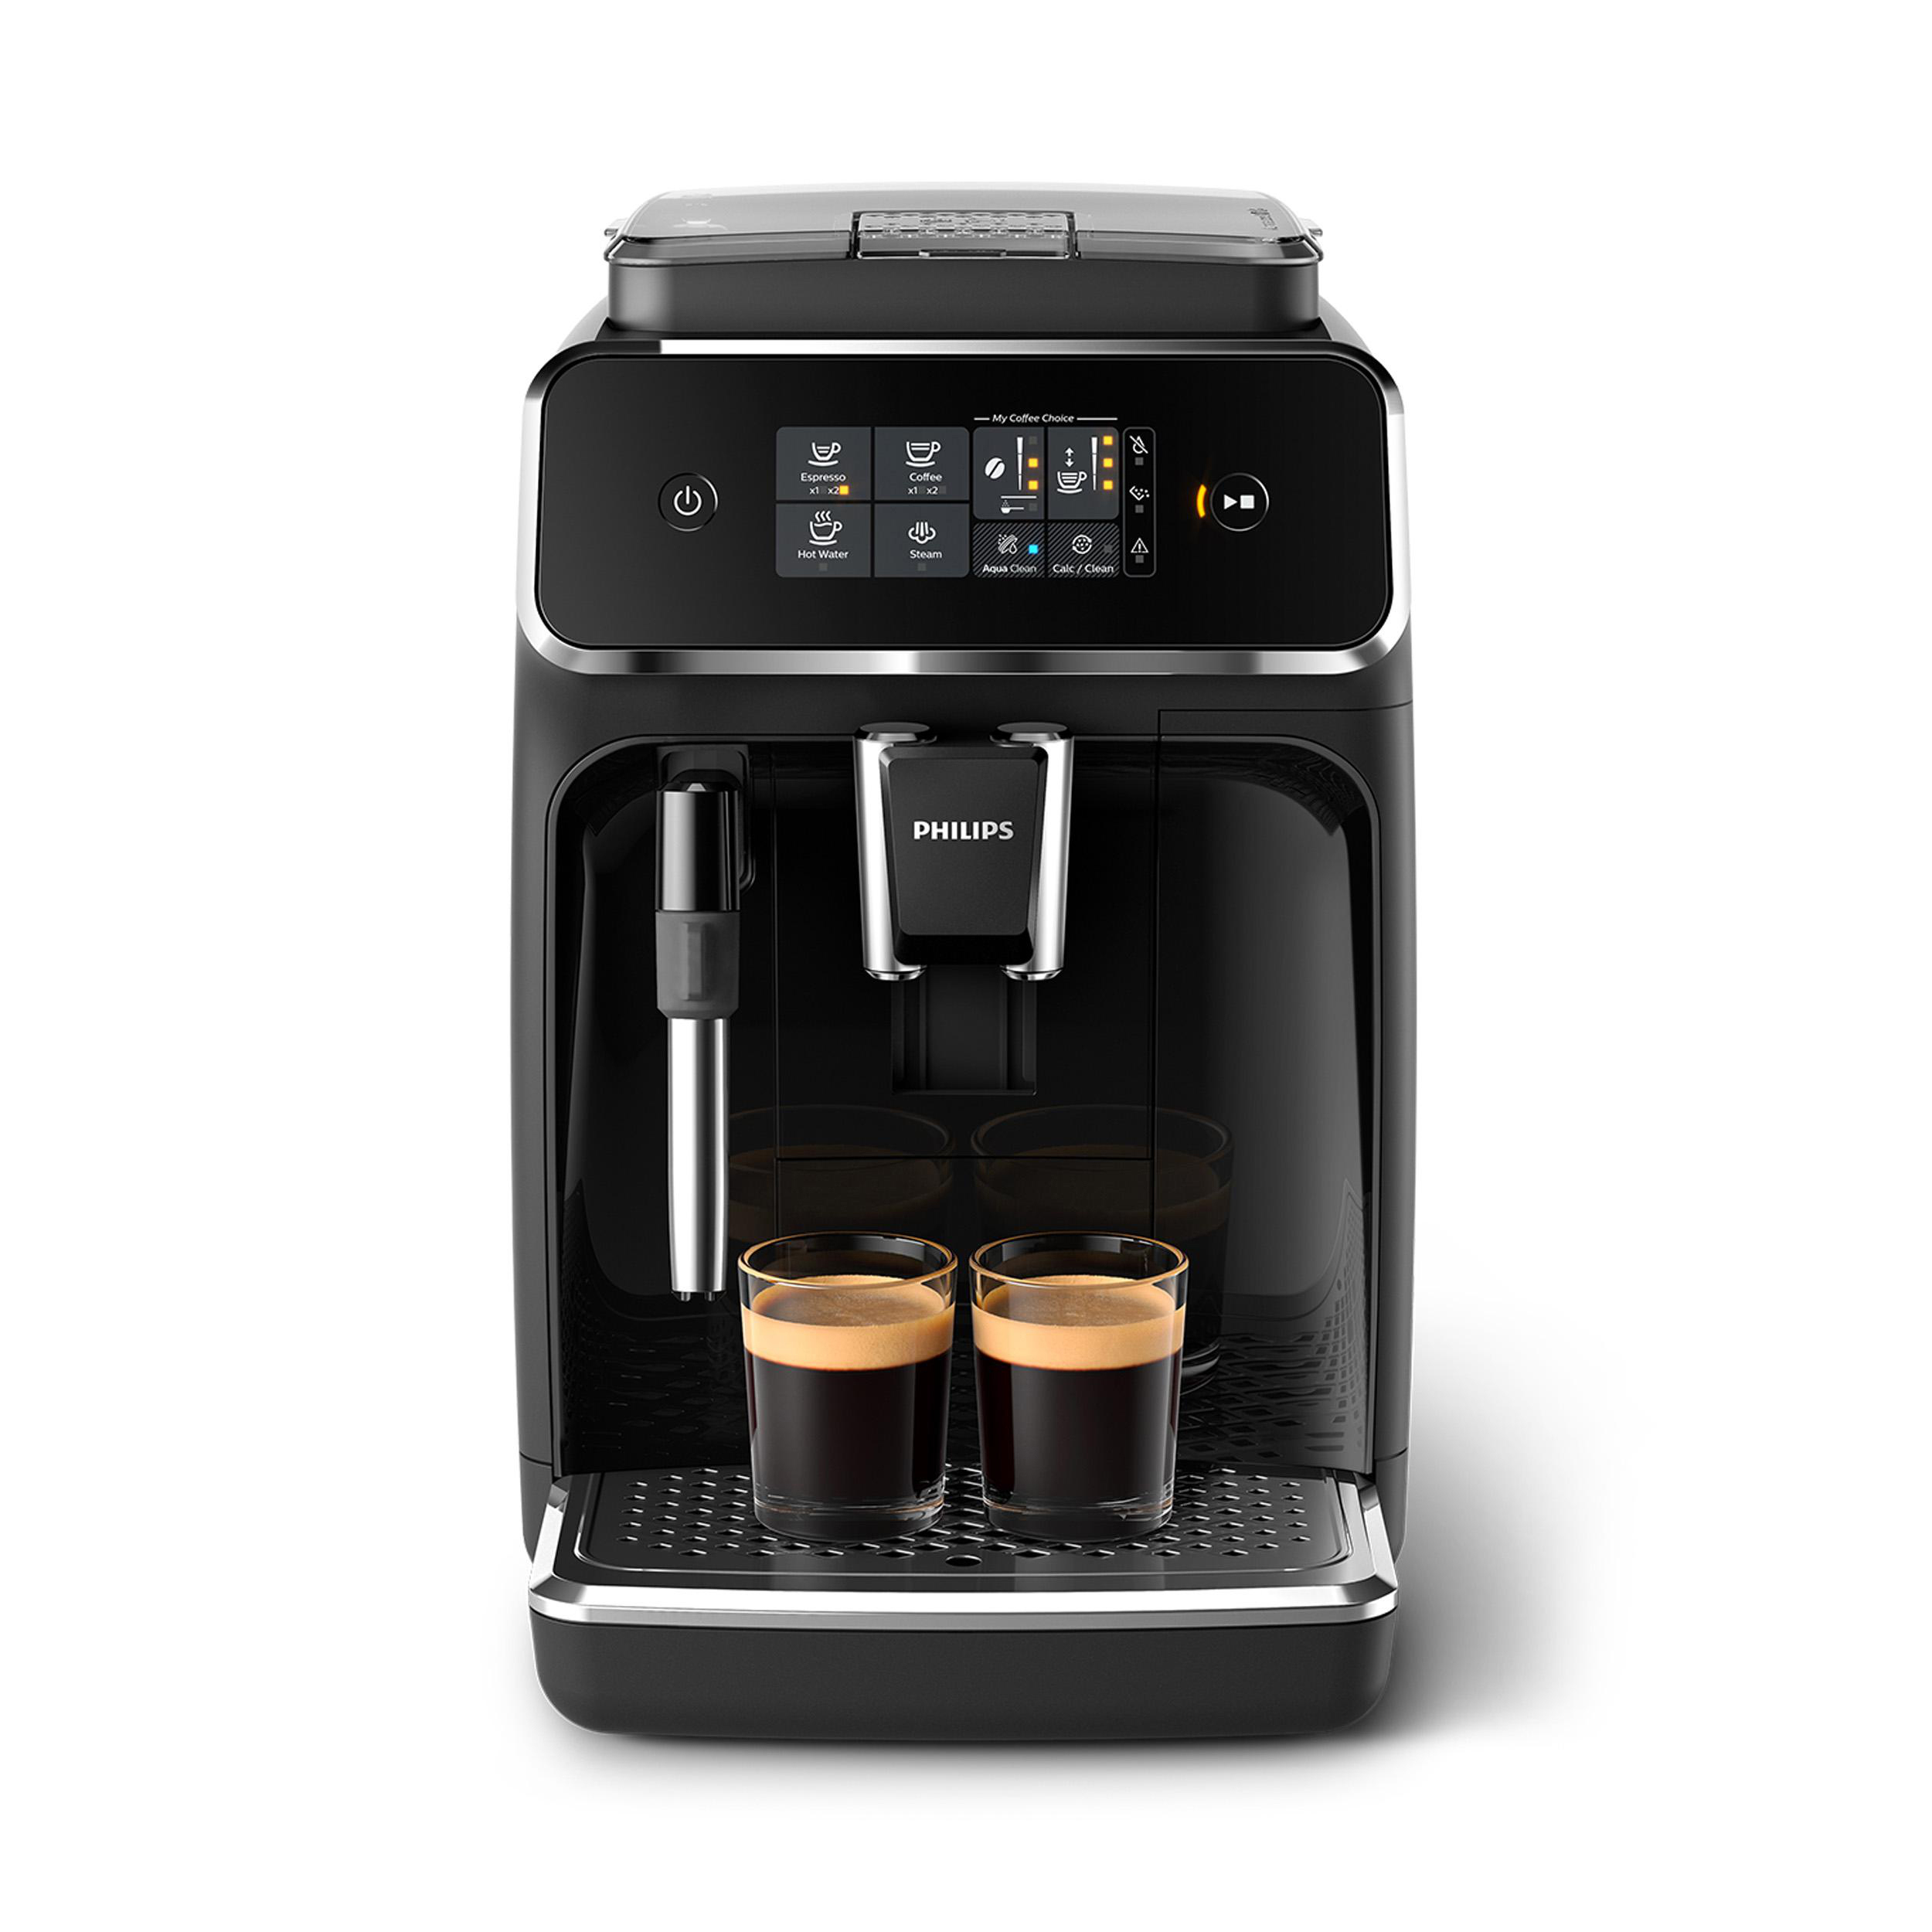 Serie Mattschwarz PHILIPS Kaffeevollautomat 2200 Kaffeespezialitäten EP2220/40 2